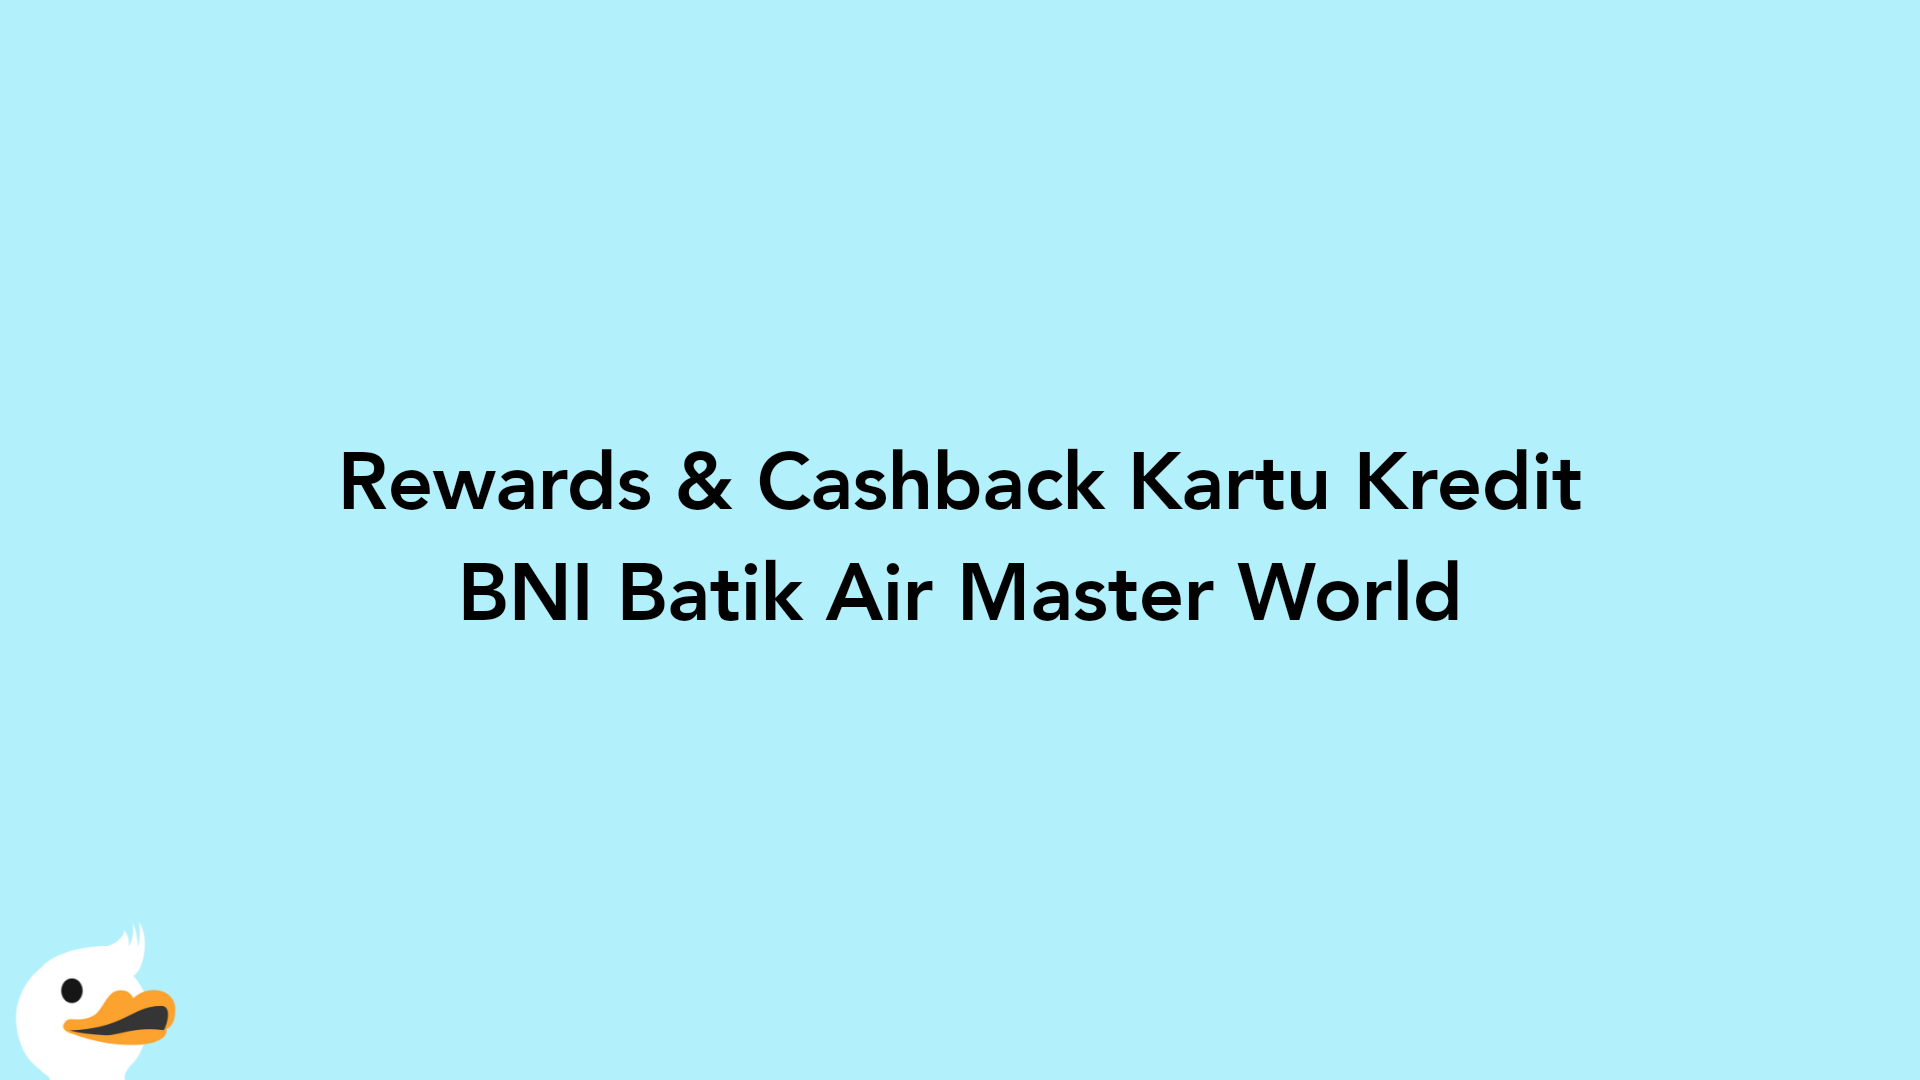 Rewards & Cashback Kartu Kredit BNI Batik Air Master World